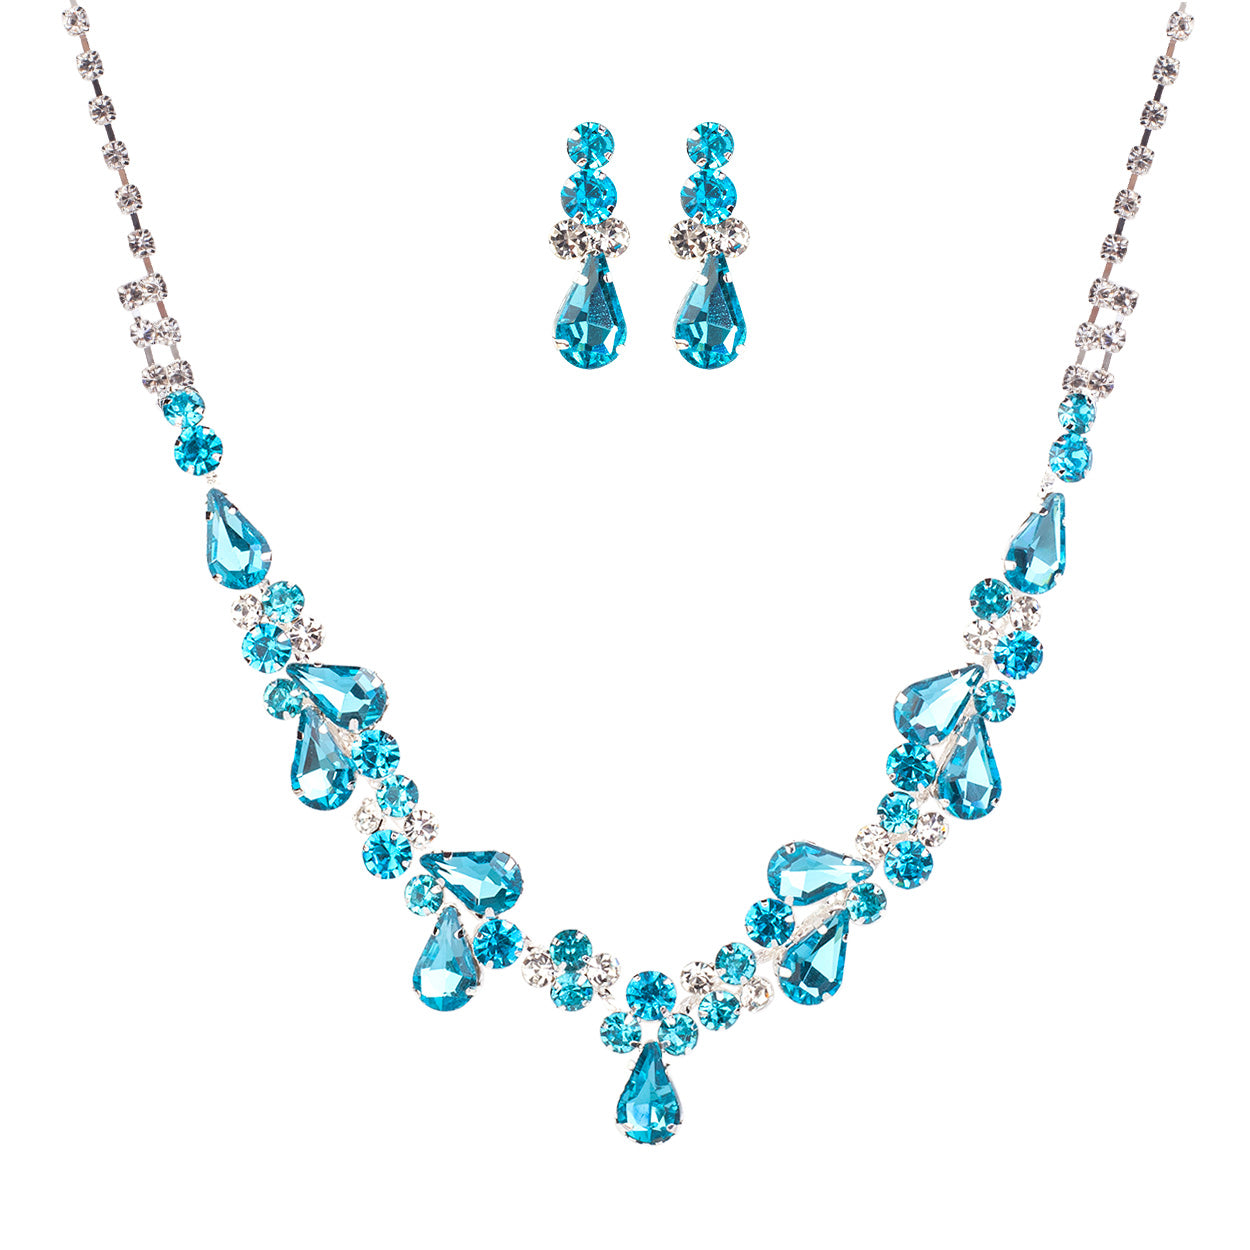 Women's Rhinestone Teardrop Statement Necklace Hypoallergenic Drop Earrings  Set, 15-21 with 6 Extender (Aqua Blue Silver Tone)